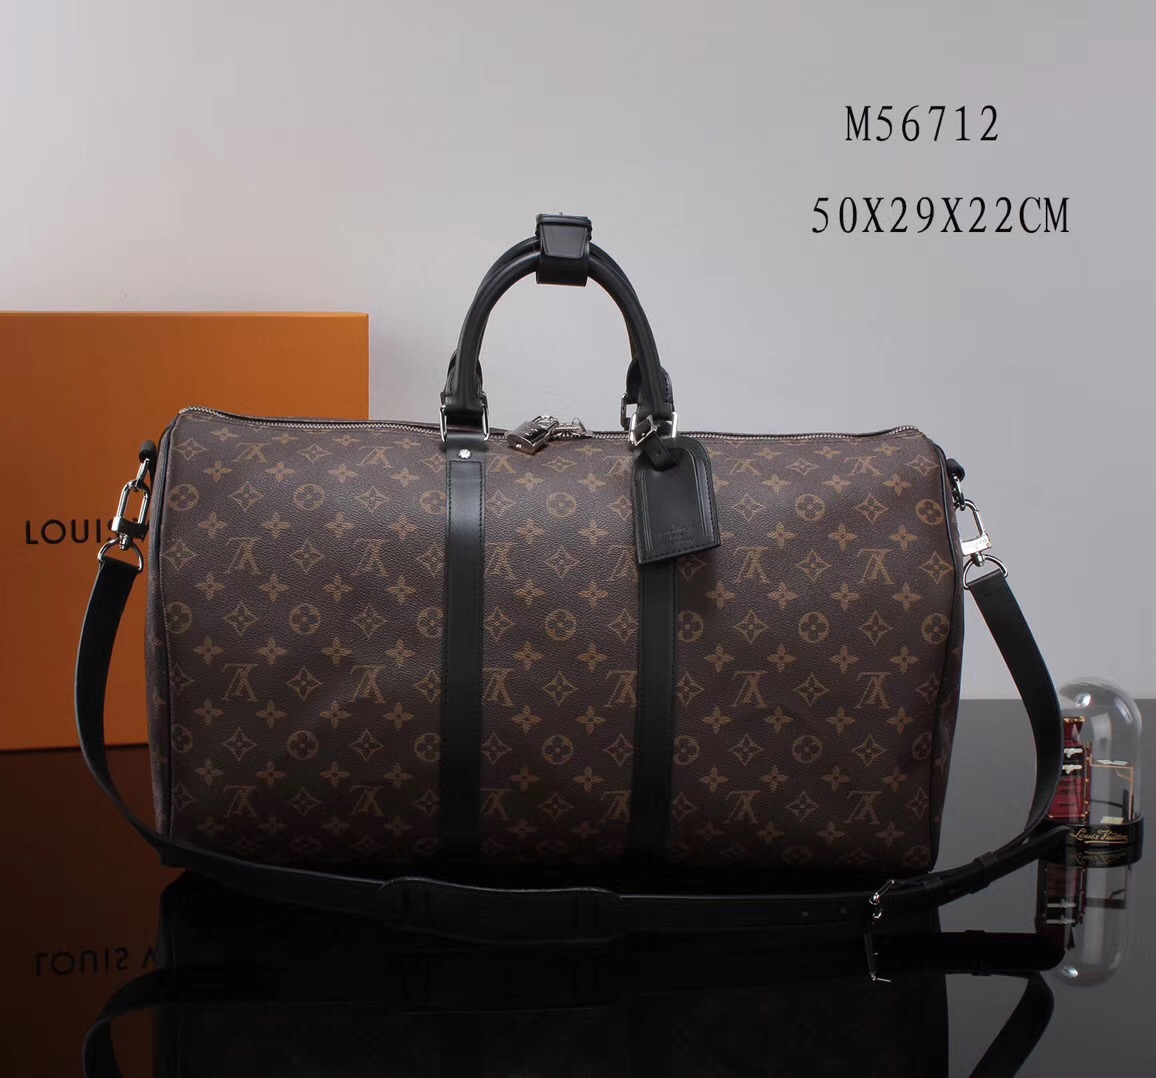 LV Louis Vuitton M56712 Monogram Keepall bags 50 Travelling Handbags Black